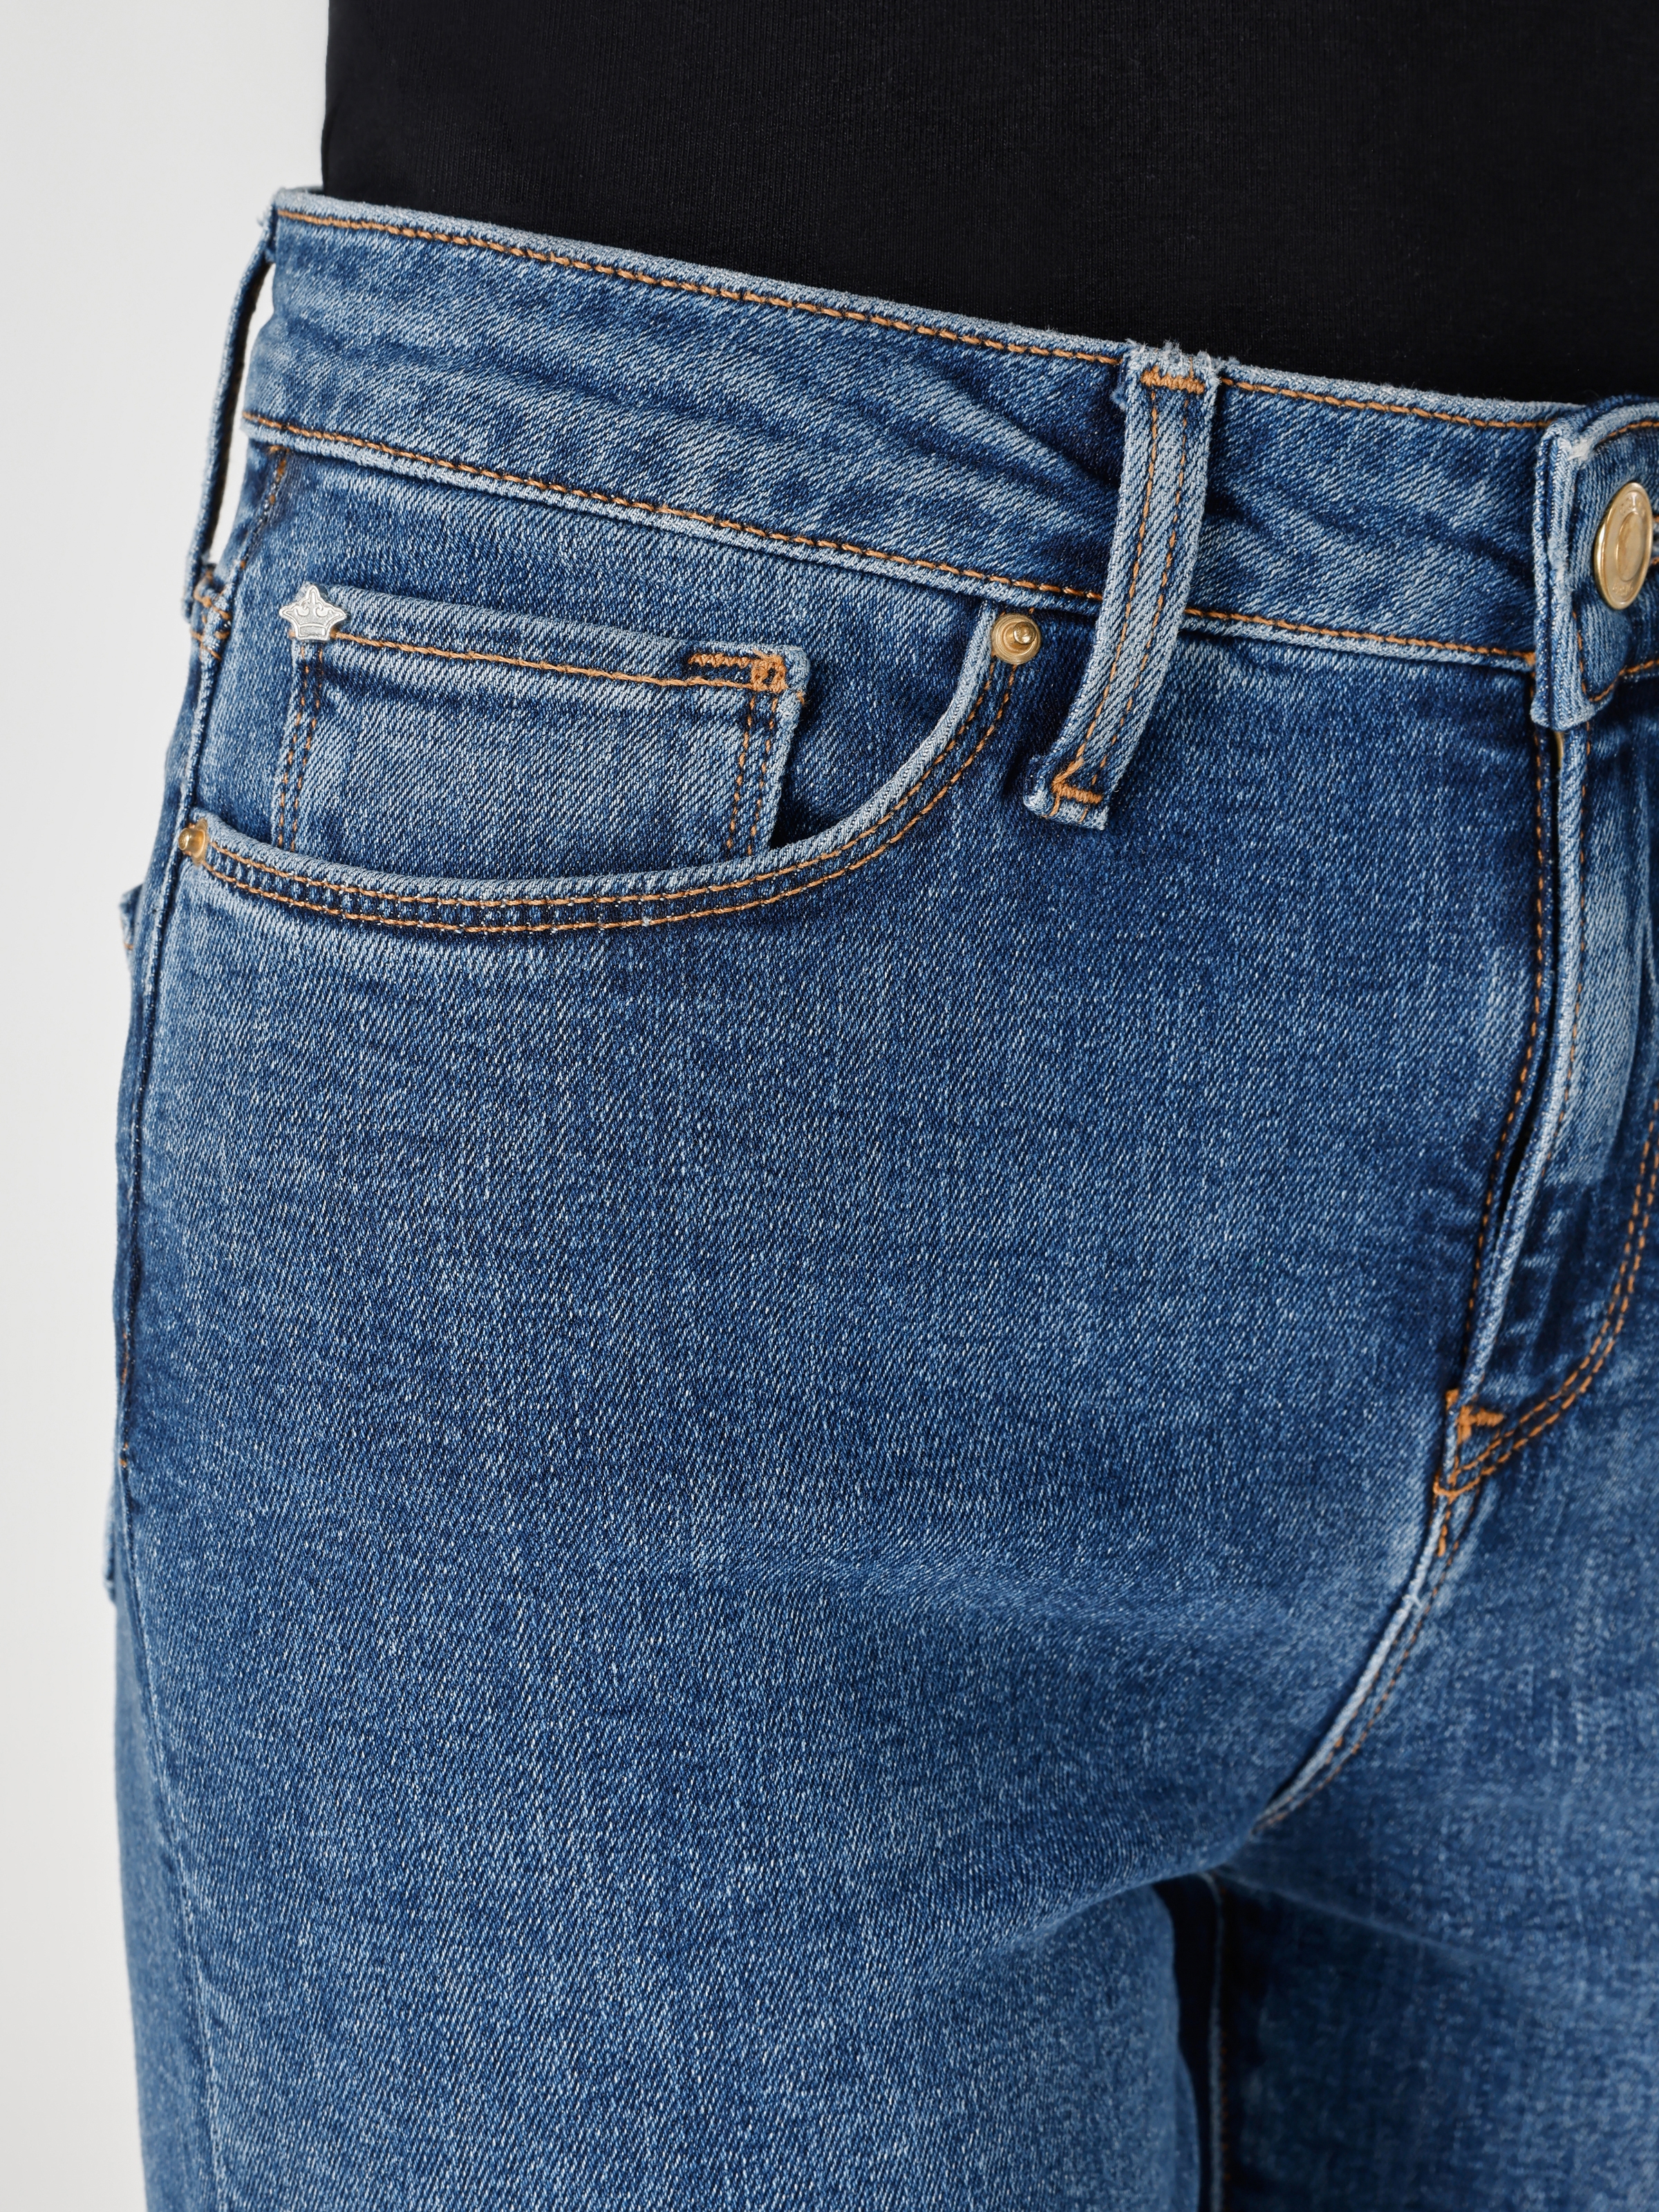 Afficher les détails de 703 Carla Pantalon En Jean Bleu Taille Moyenne Coupe Slim Jambe Droite Pour Femme